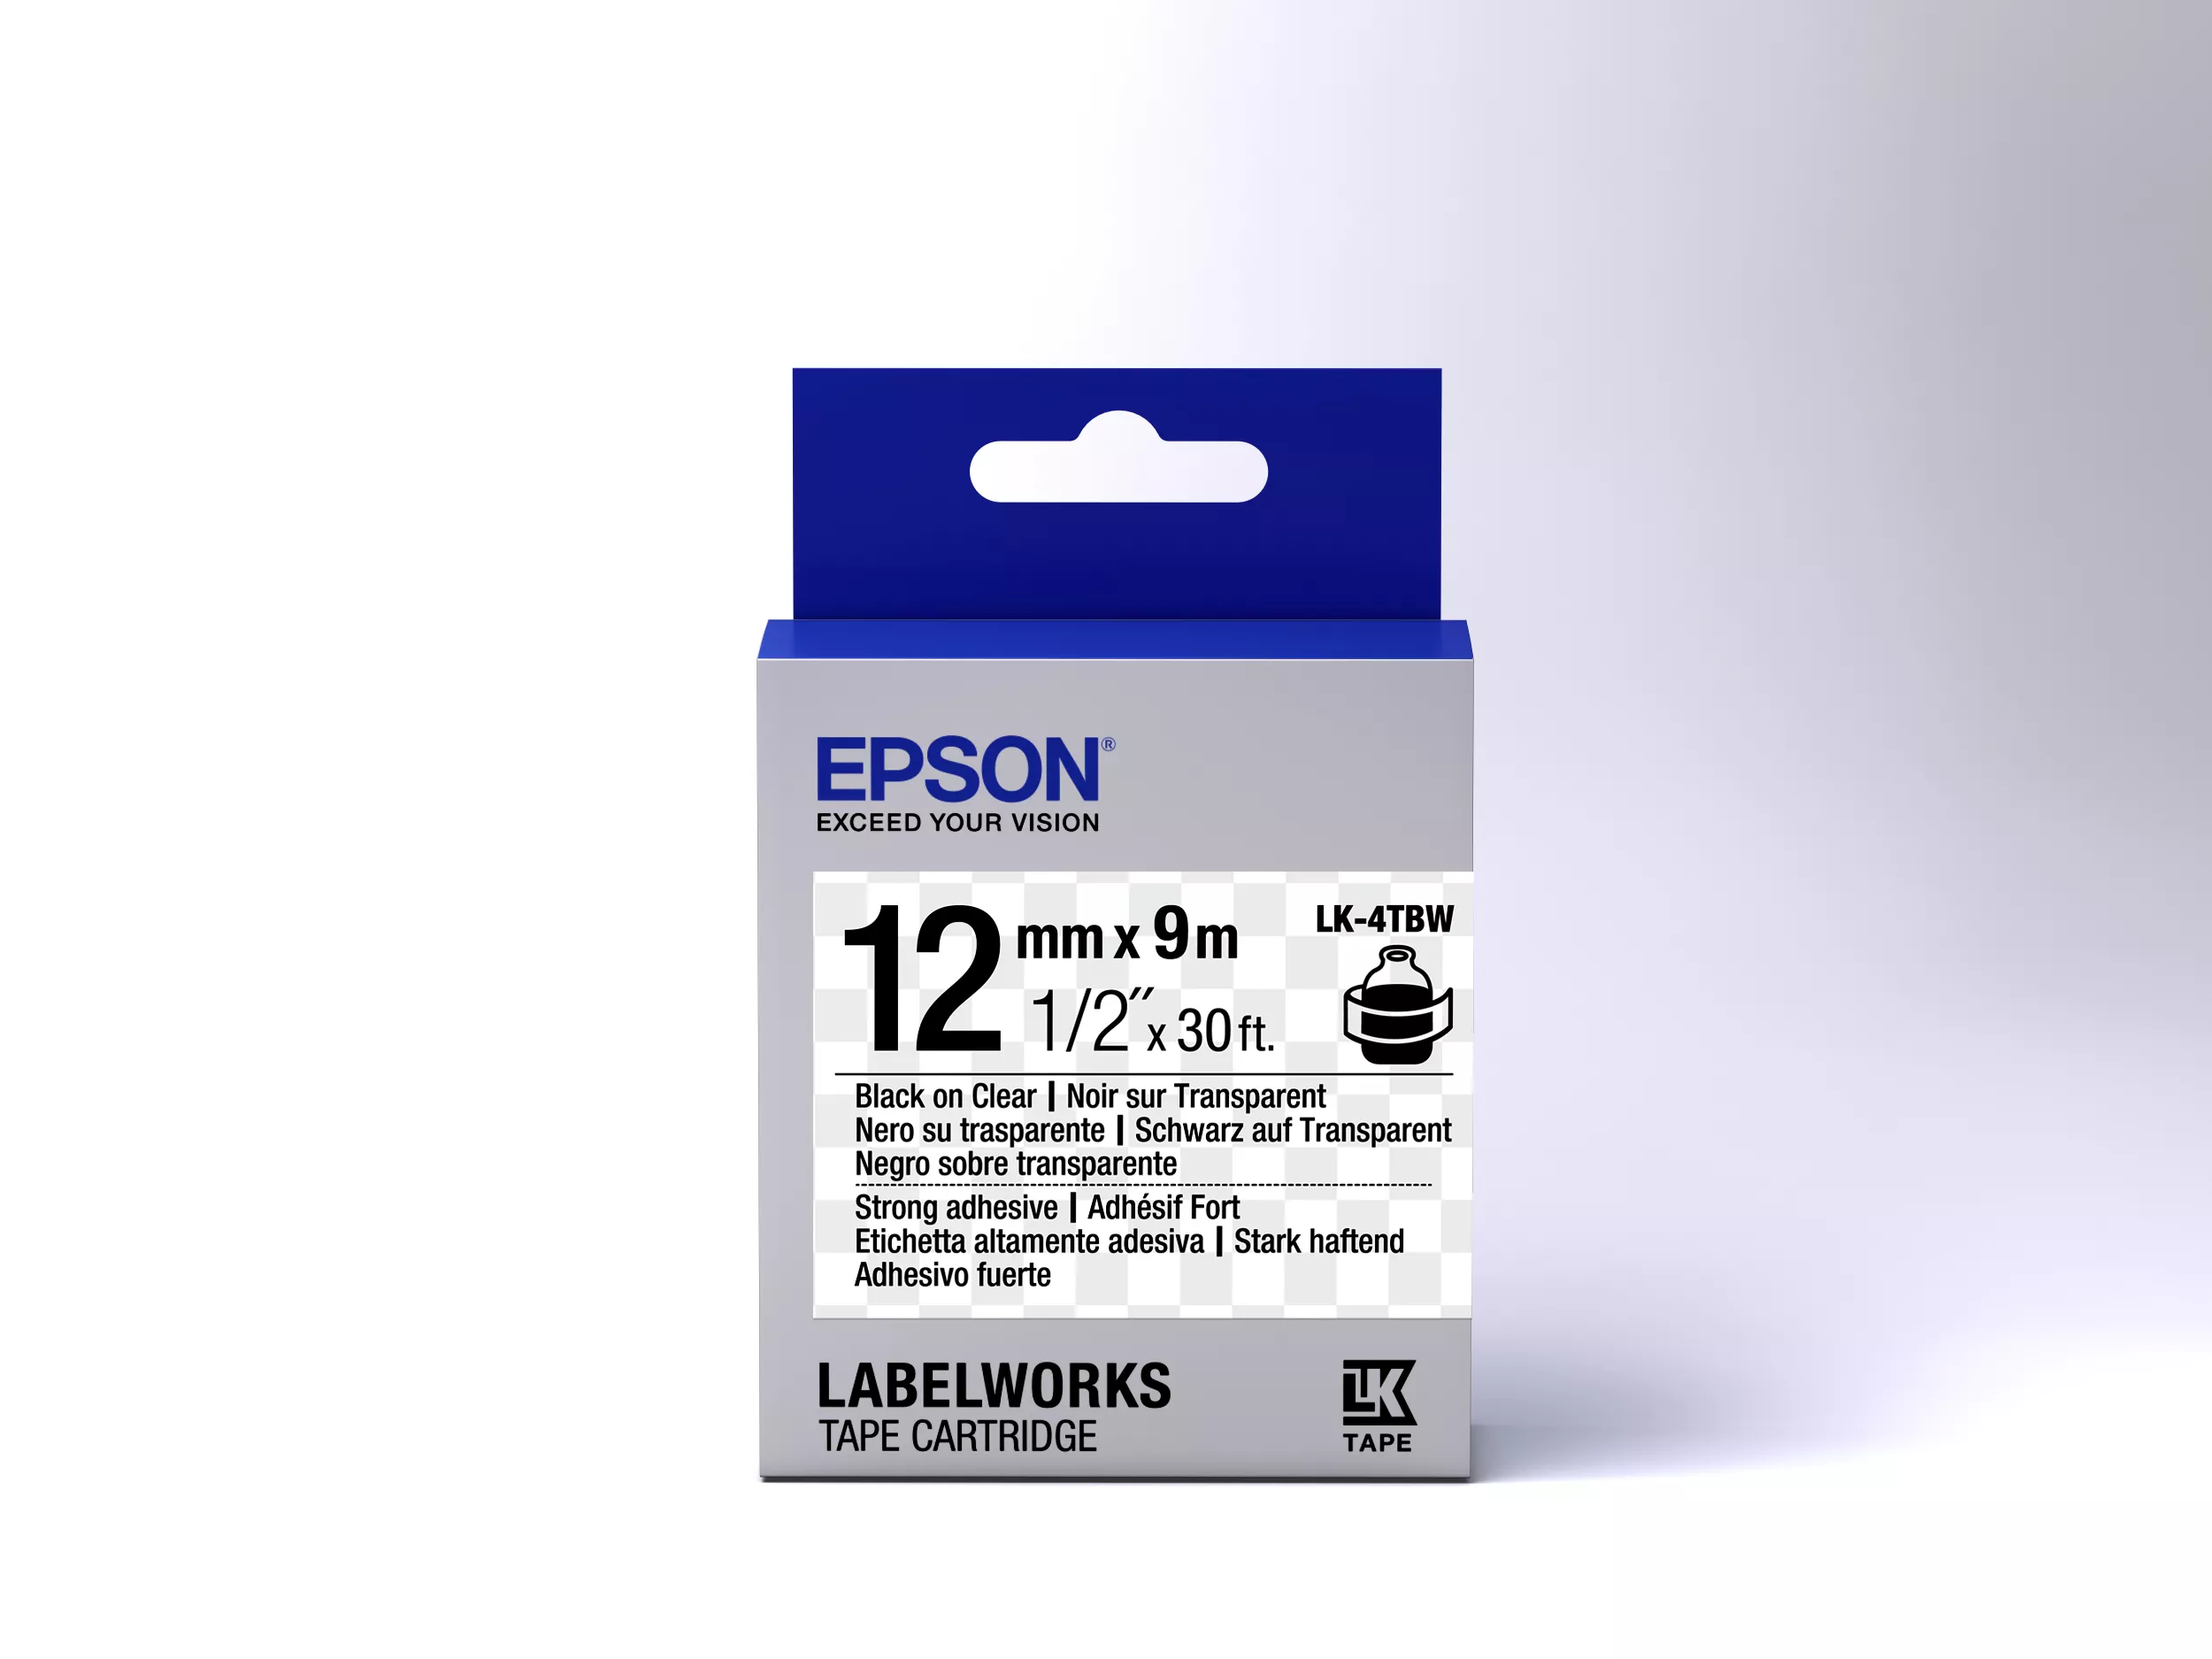 Vente Epson LK-4TBW - Adhésif Fort - Noir sur Epson au meilleur prix - visuel 2